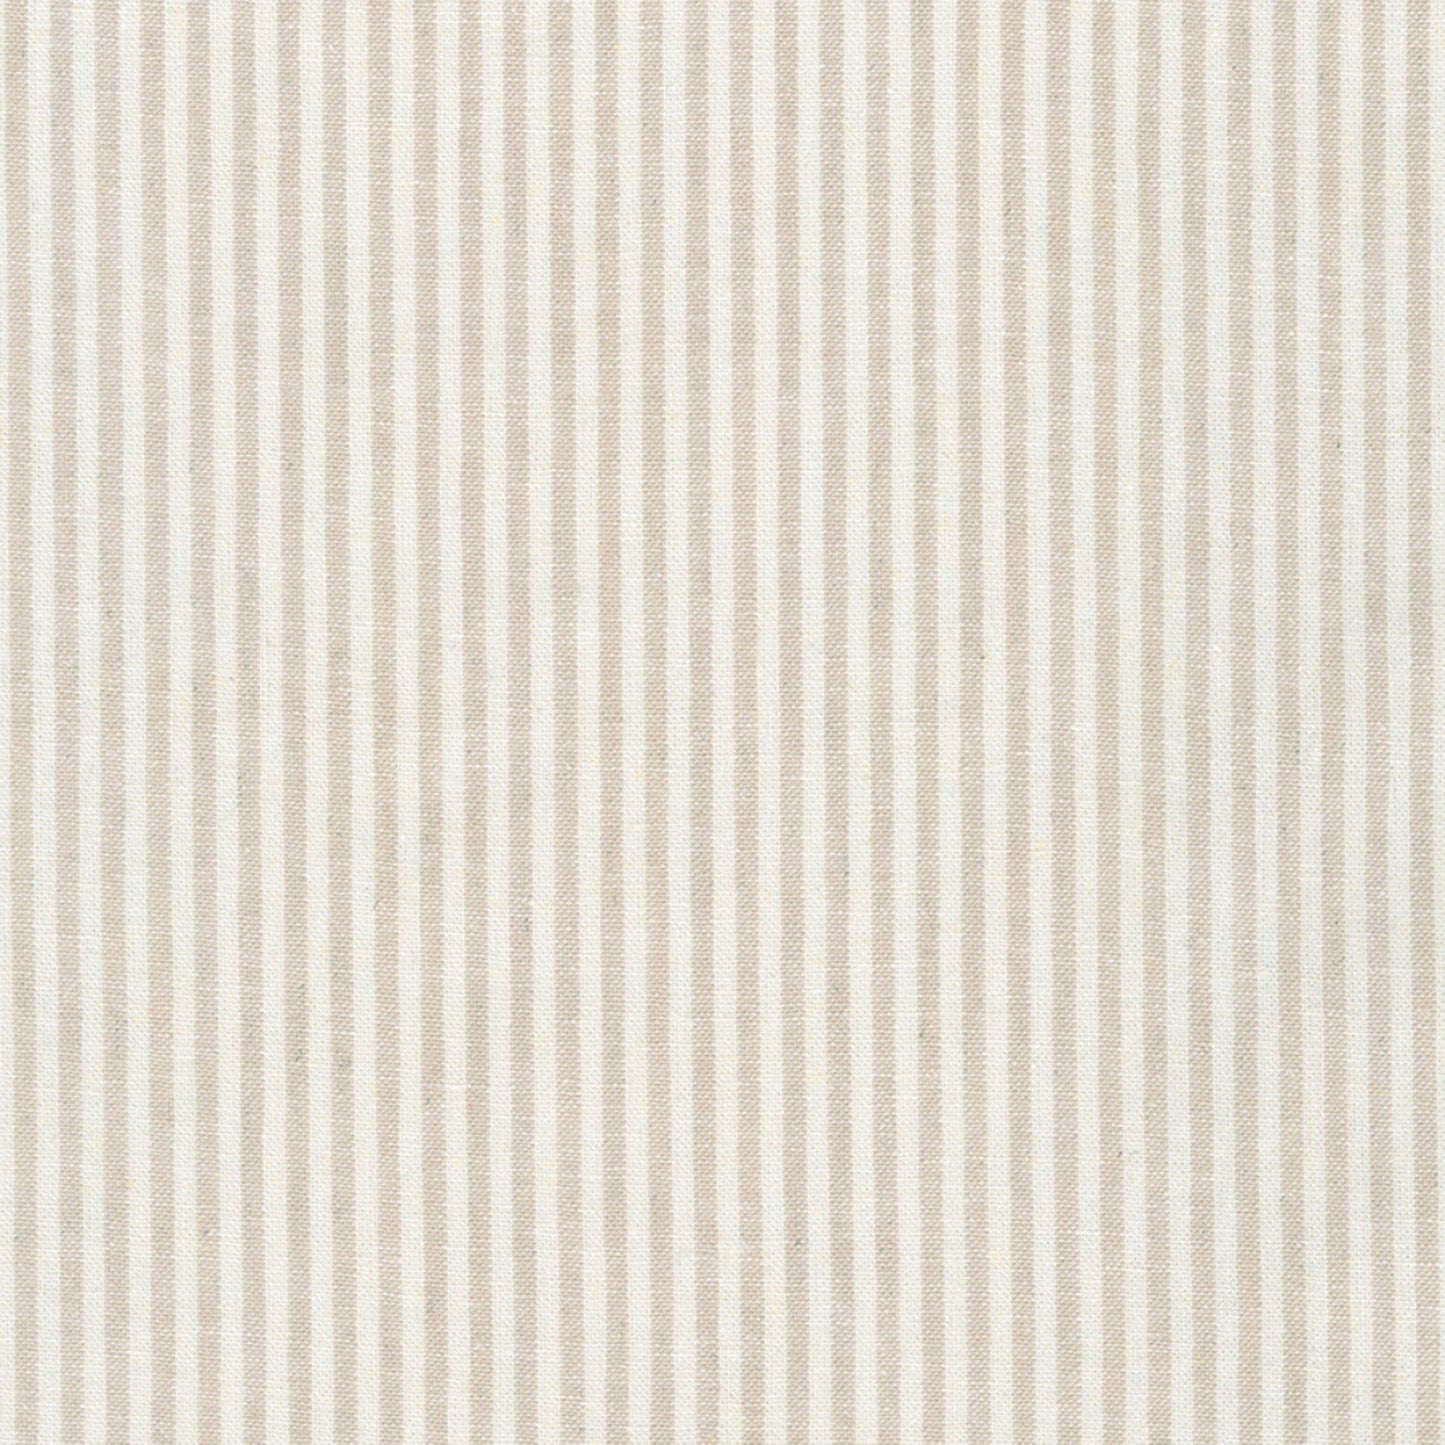 Stripe Flax - Linen - Essex Yarn-Dye